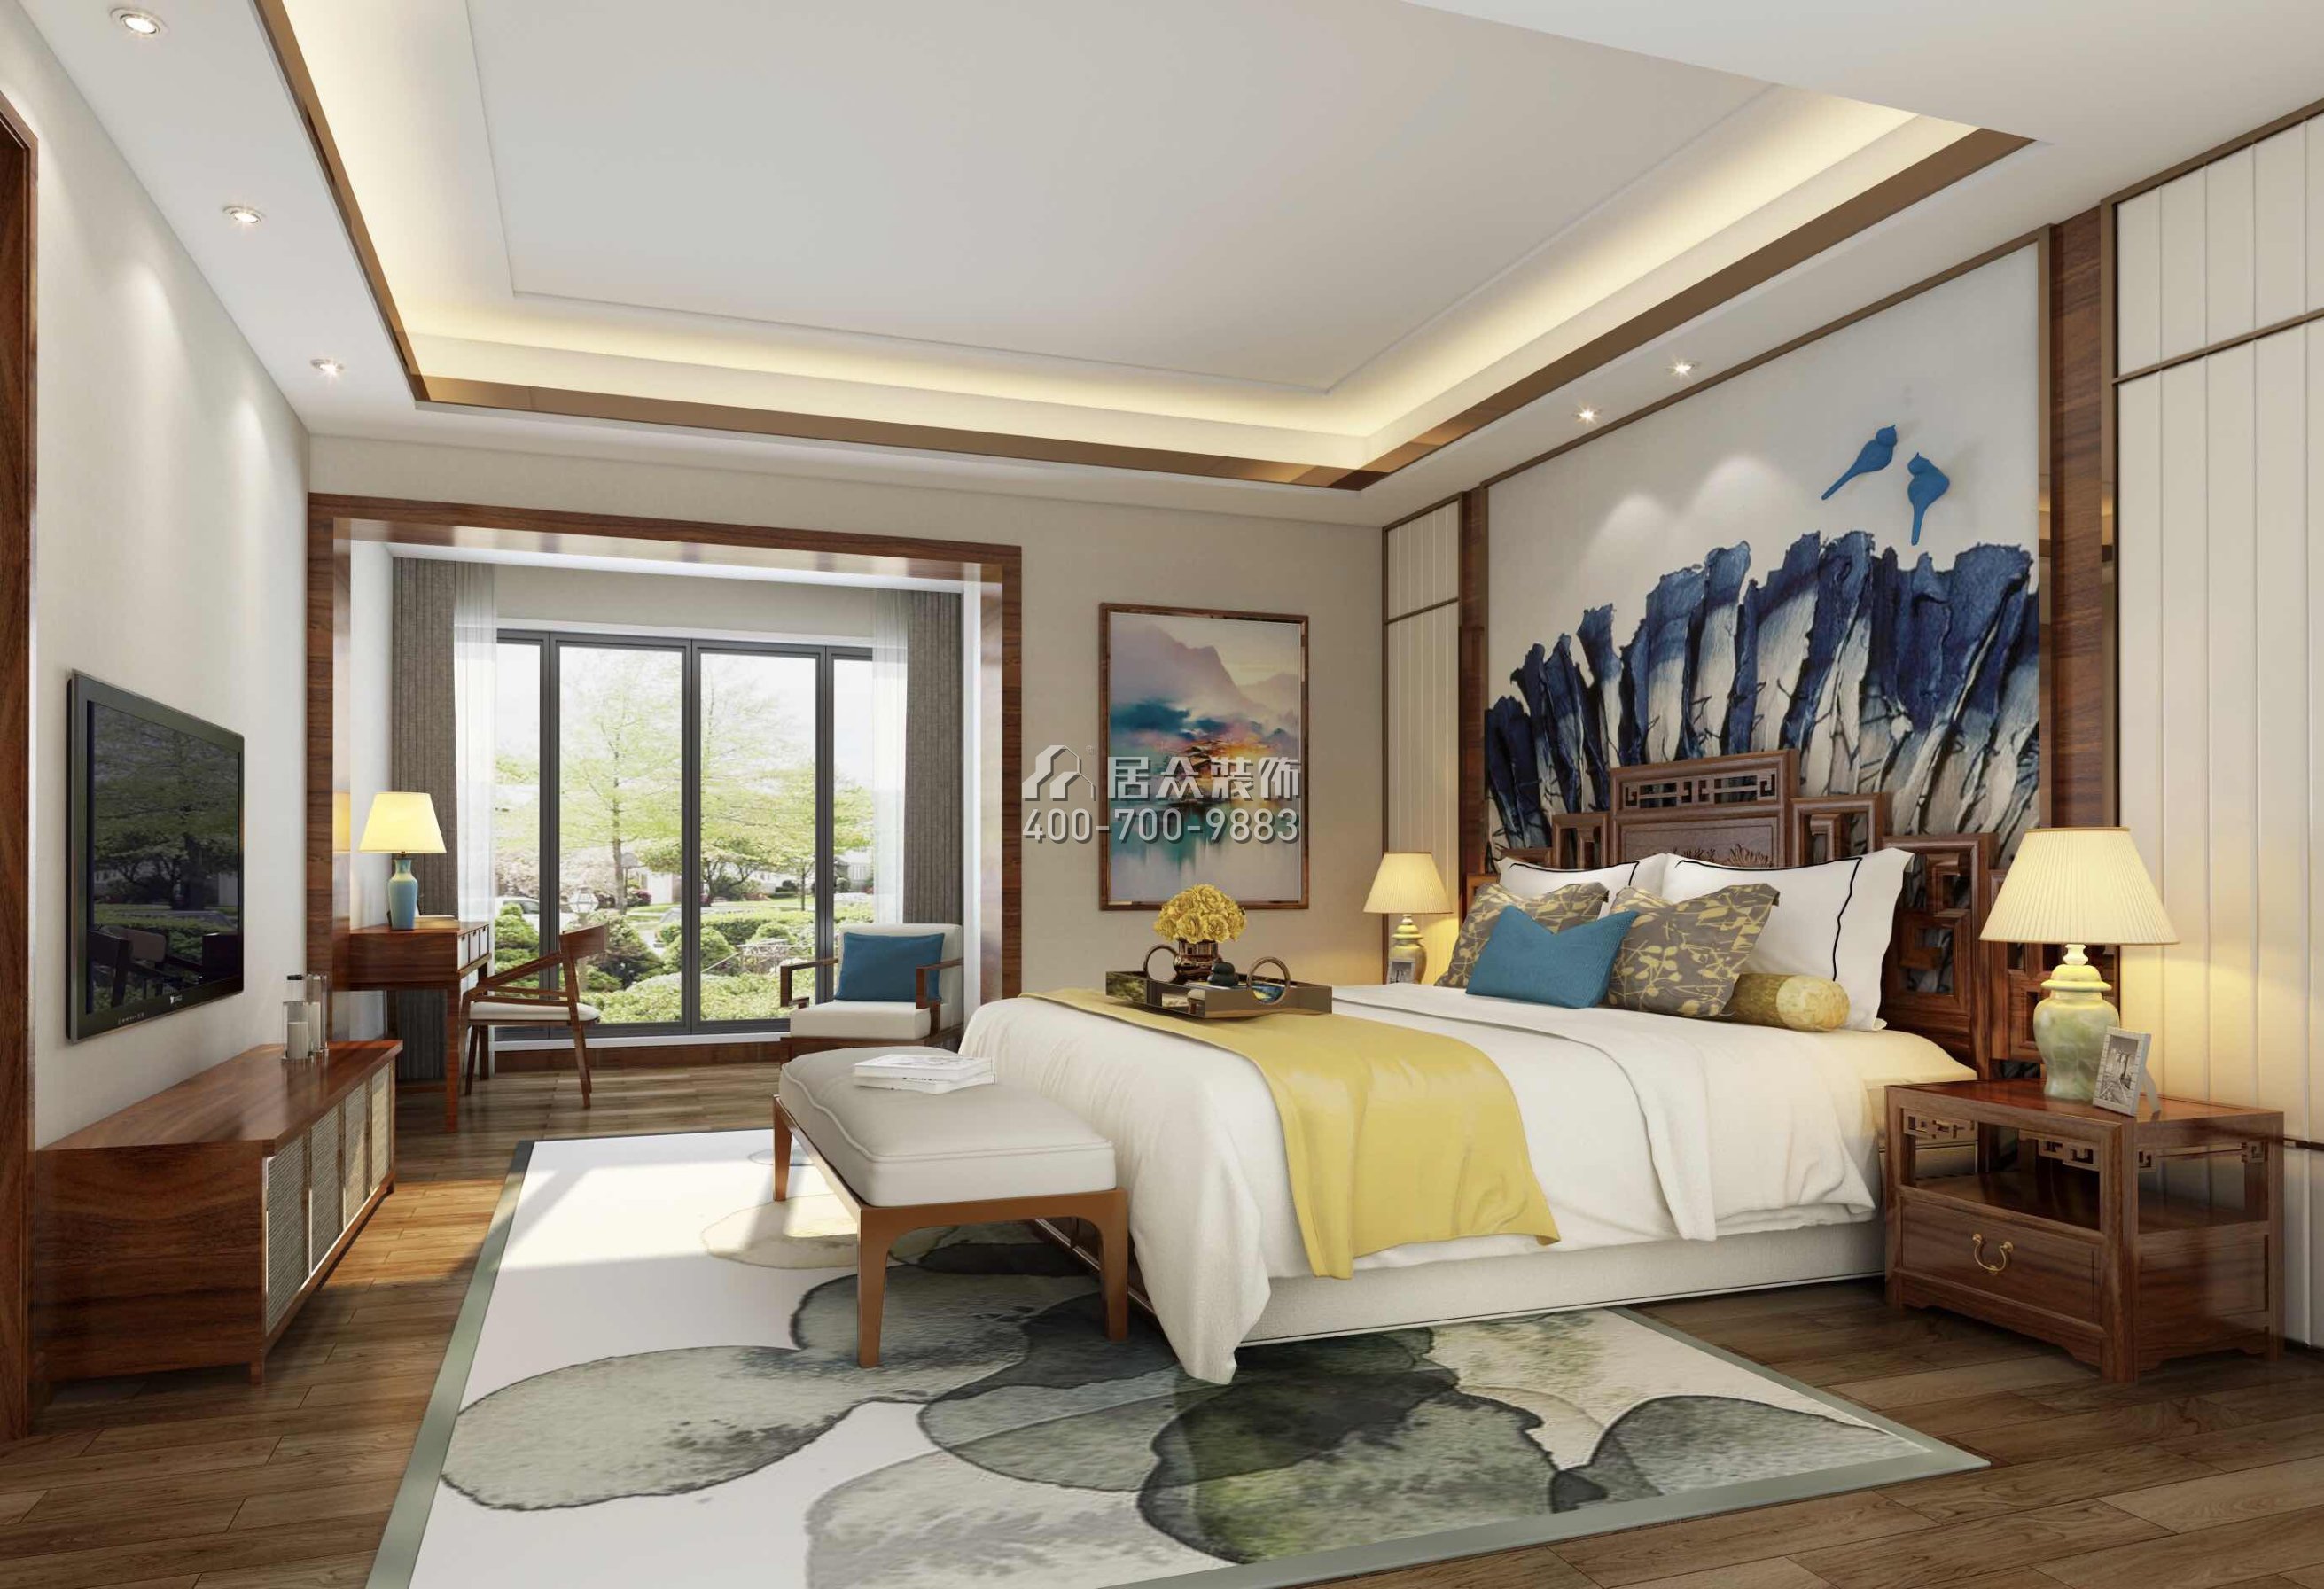 天骄华庭140平方米中式风格平层户型卧室装修效果图